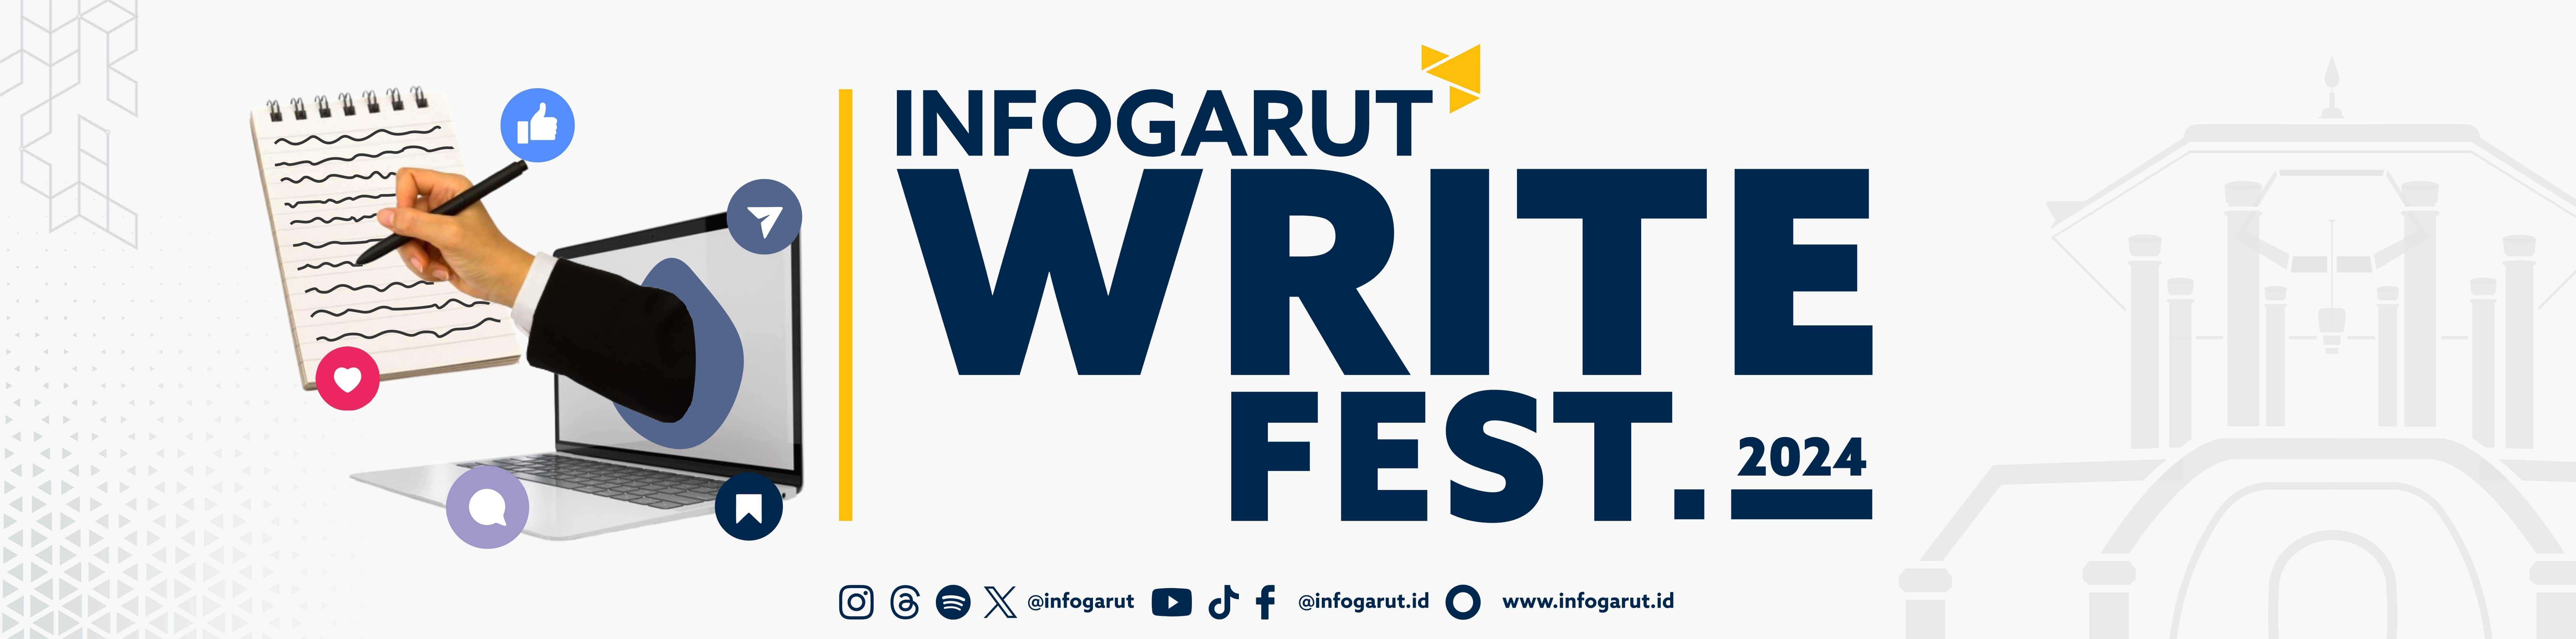 Pengumuman FInalis Info Garut Write Fest